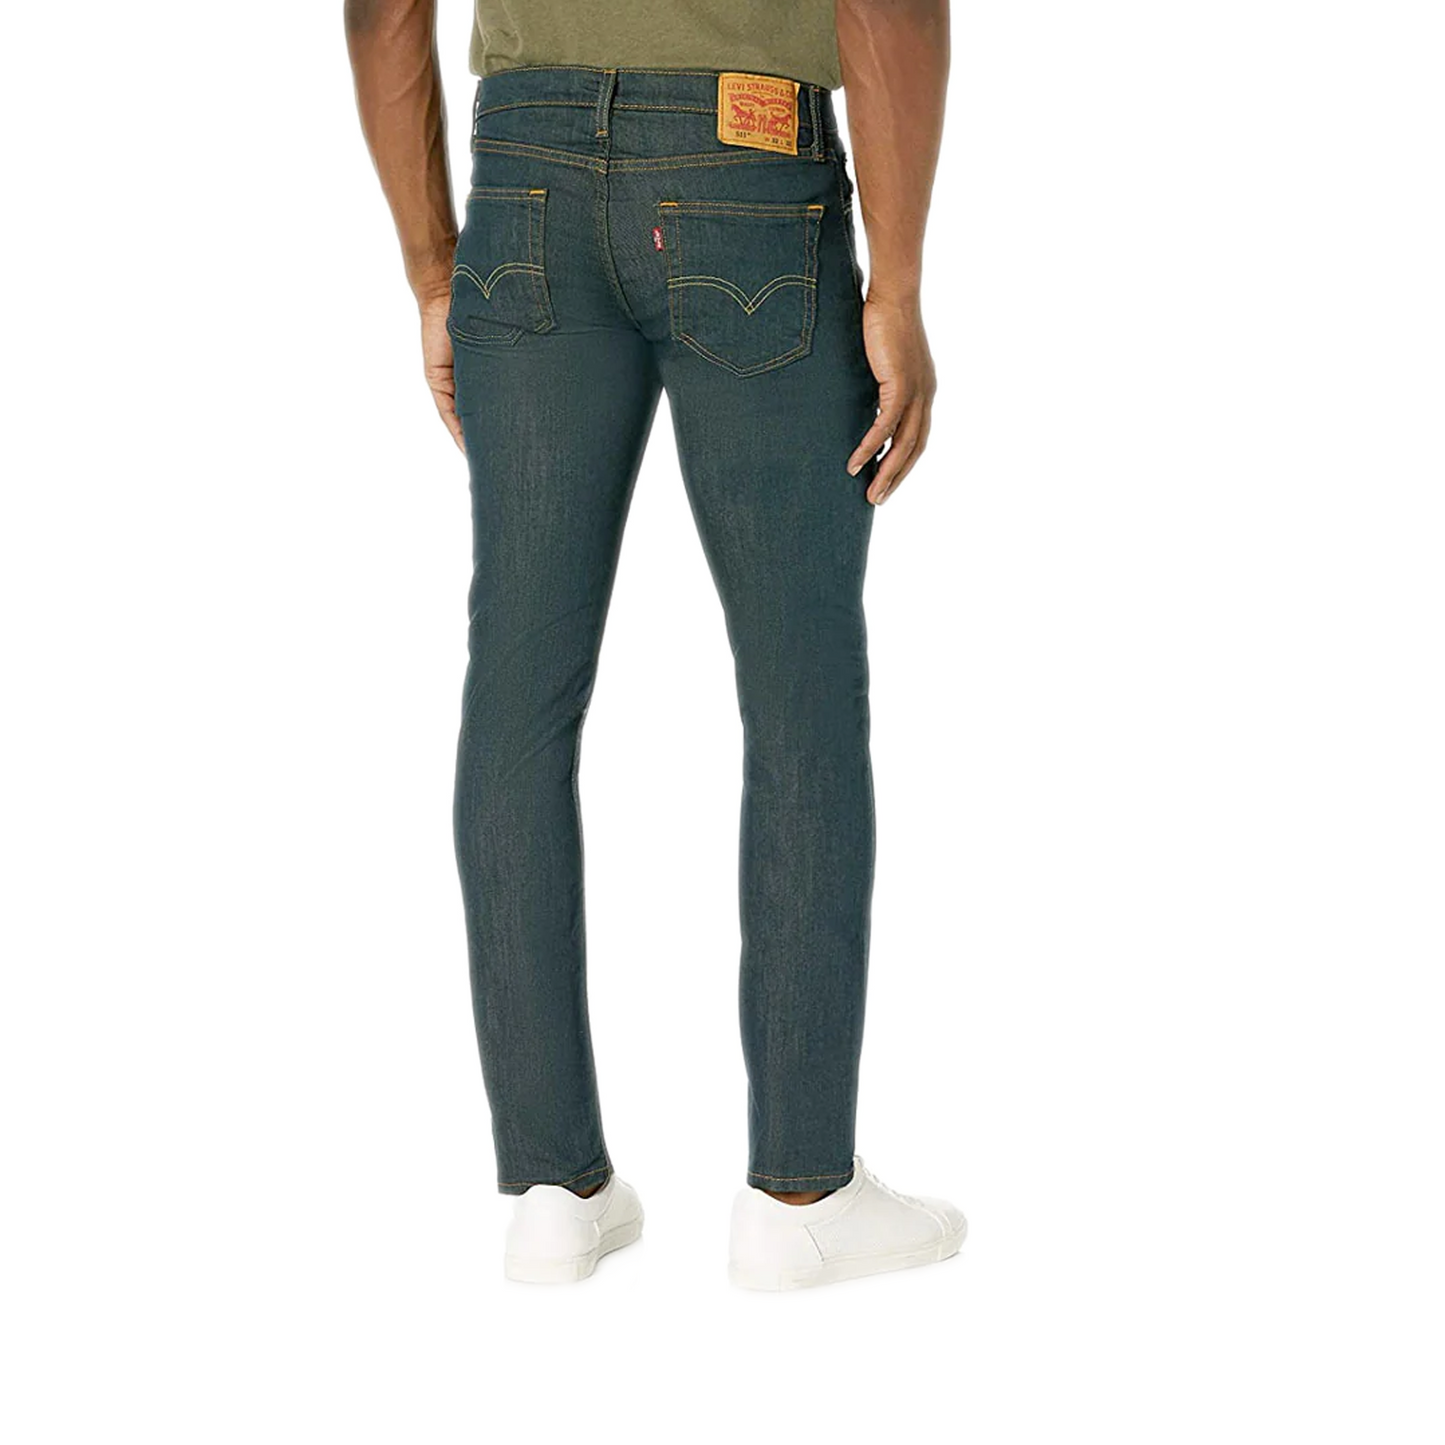 Men's Levi's 511 Slim Fit Jeans - Rinsed Playa